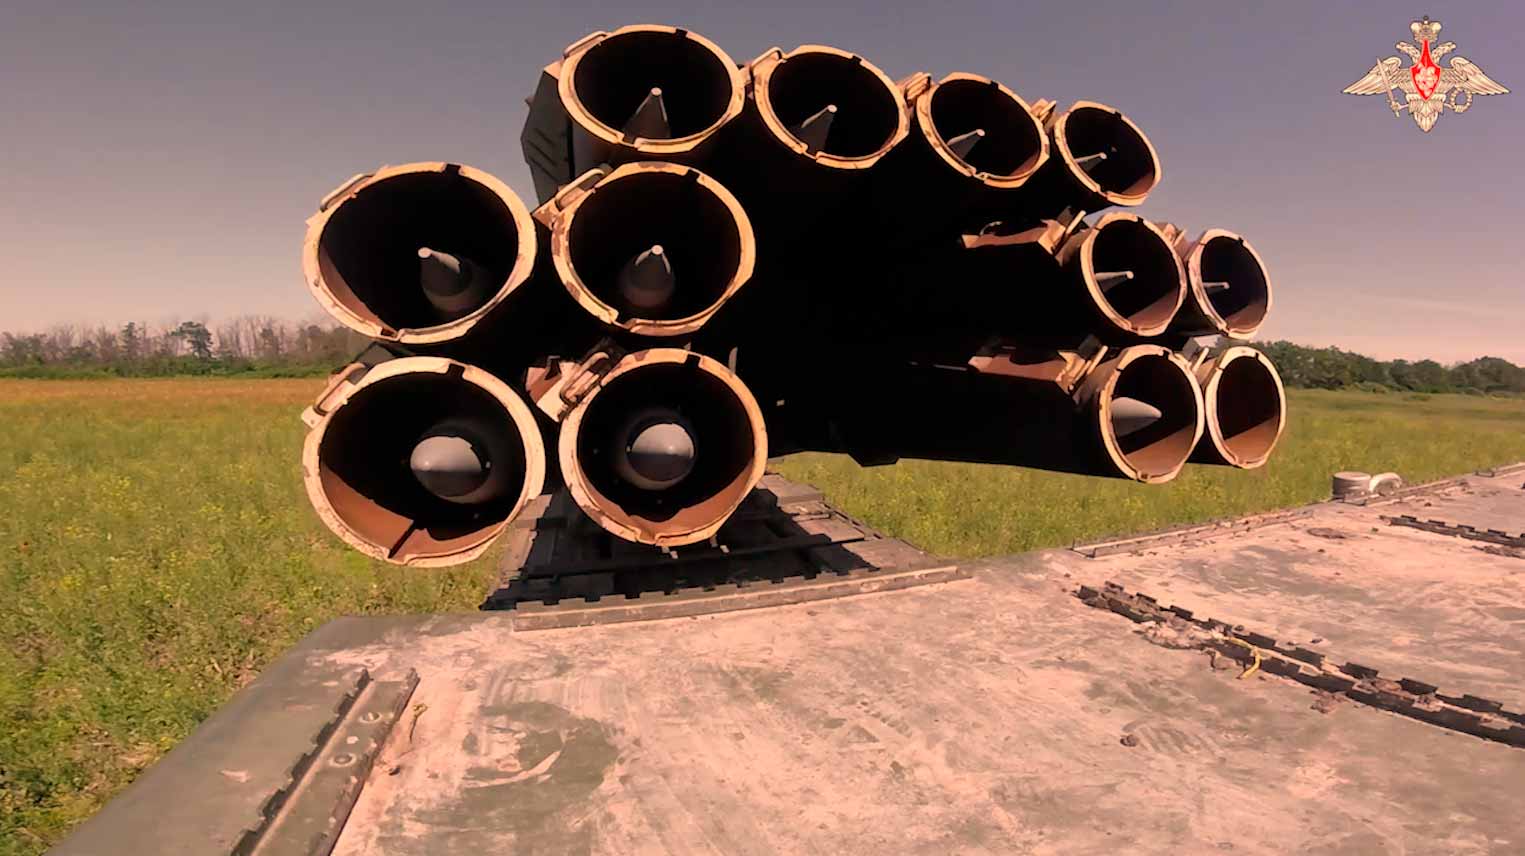 Vídeo mostra o ataque do poderoso sistema de lançamento múltiplo de foguetes Tornado-S na Ucrânia.Fotos e vídeo: reprodução t.me/mod_russia